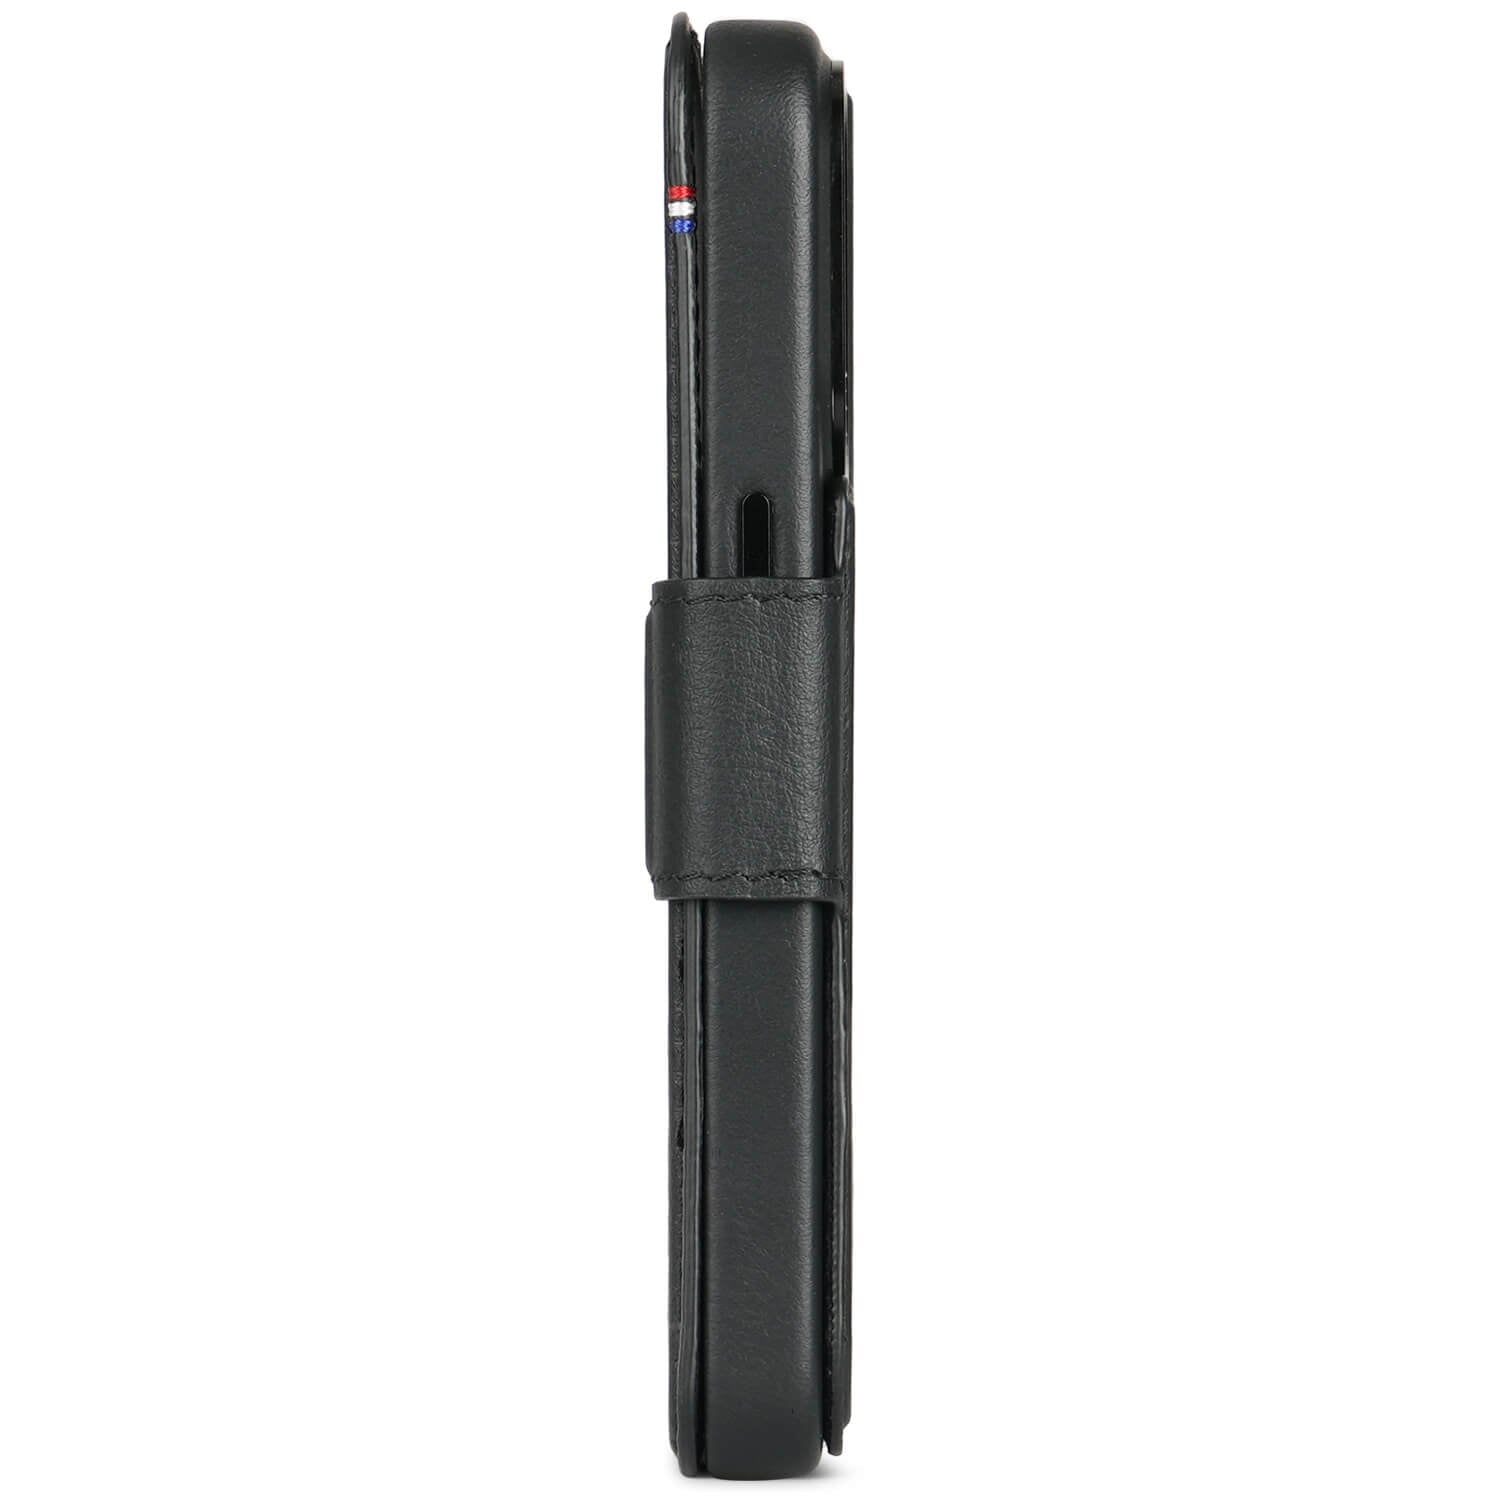 Detachable Wallet Leather iPhone 15 Pro, Black